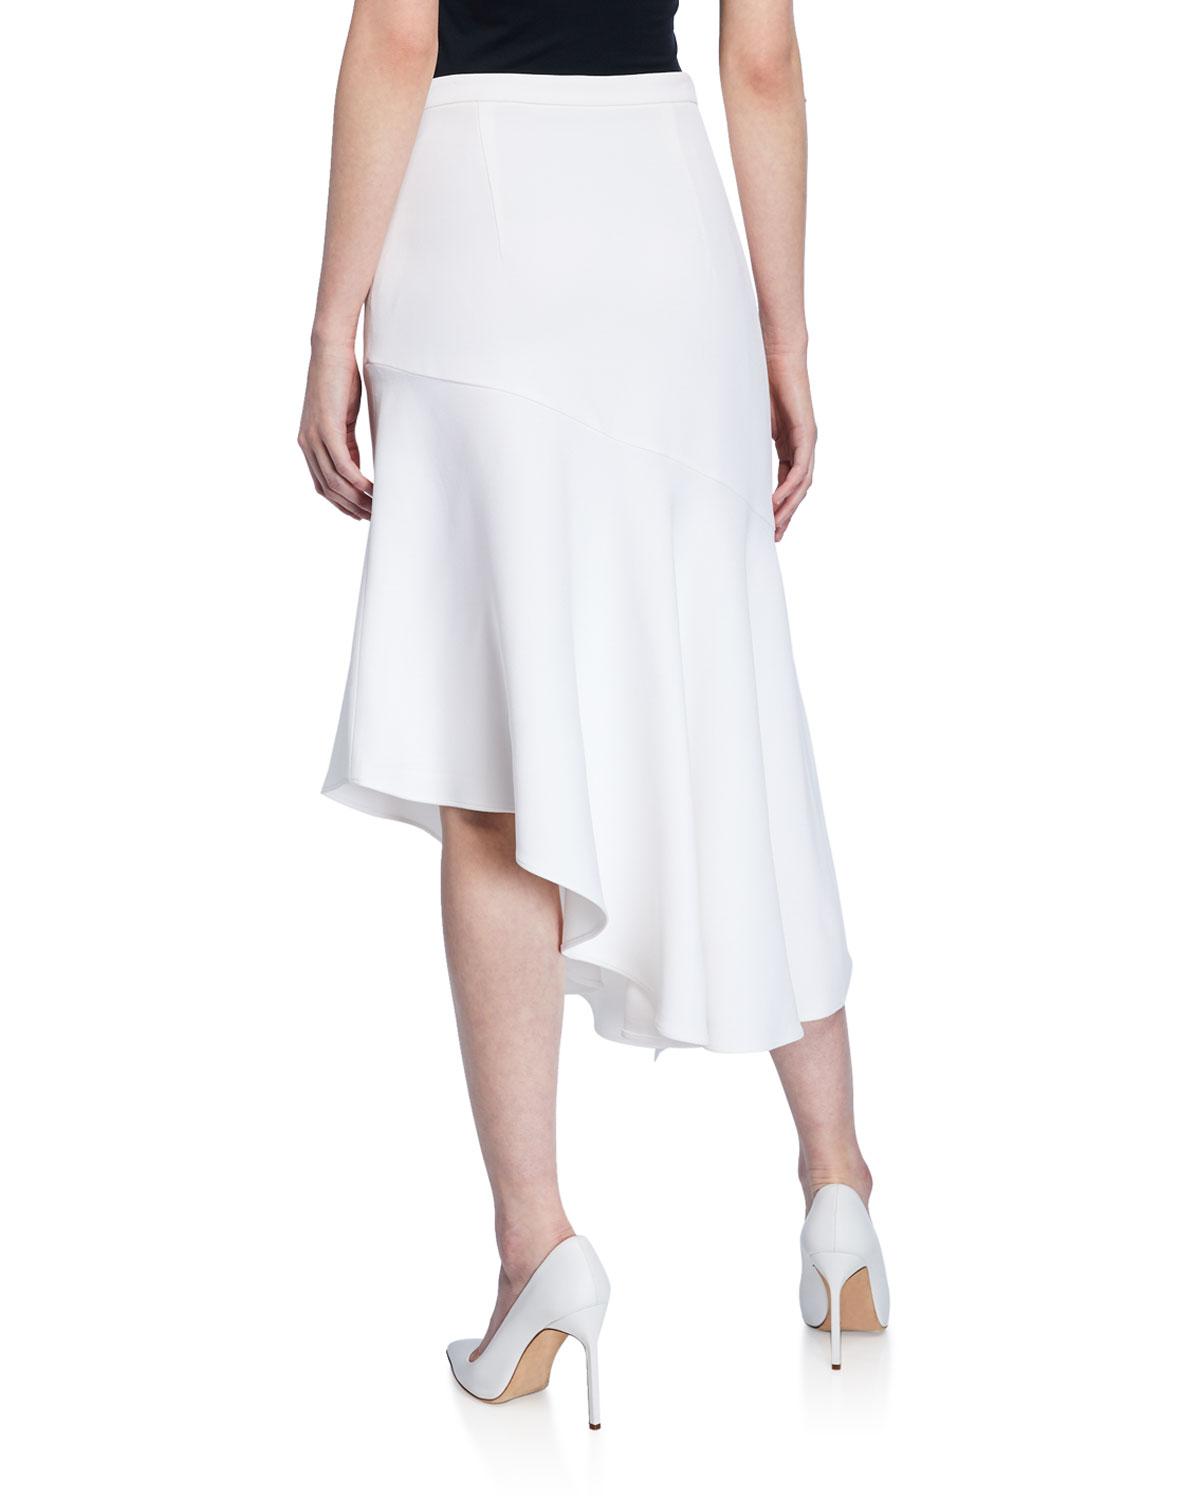 Michael Kors Asymmetric Crepe Ruffle Midi Skirt in White - Lyst